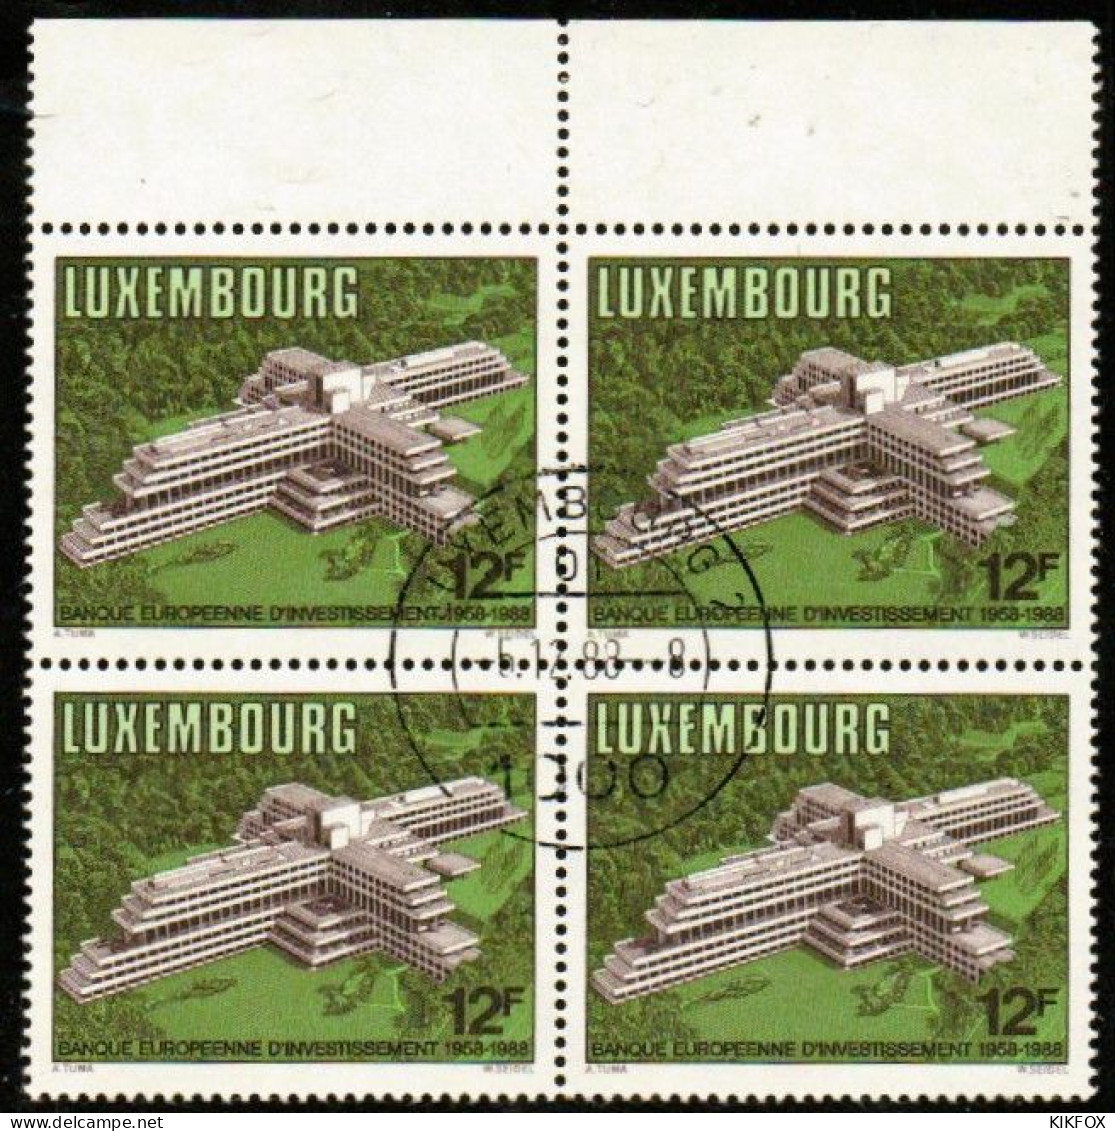 Luxembourg, Luxemburg,1988, MI 1208,YV 1158, VIERERBLOCK,30 JAHRE EUROPÄISCHE INVESTITIONSBANK (EIB),GESTEMPELT,OBLITERE - Usados